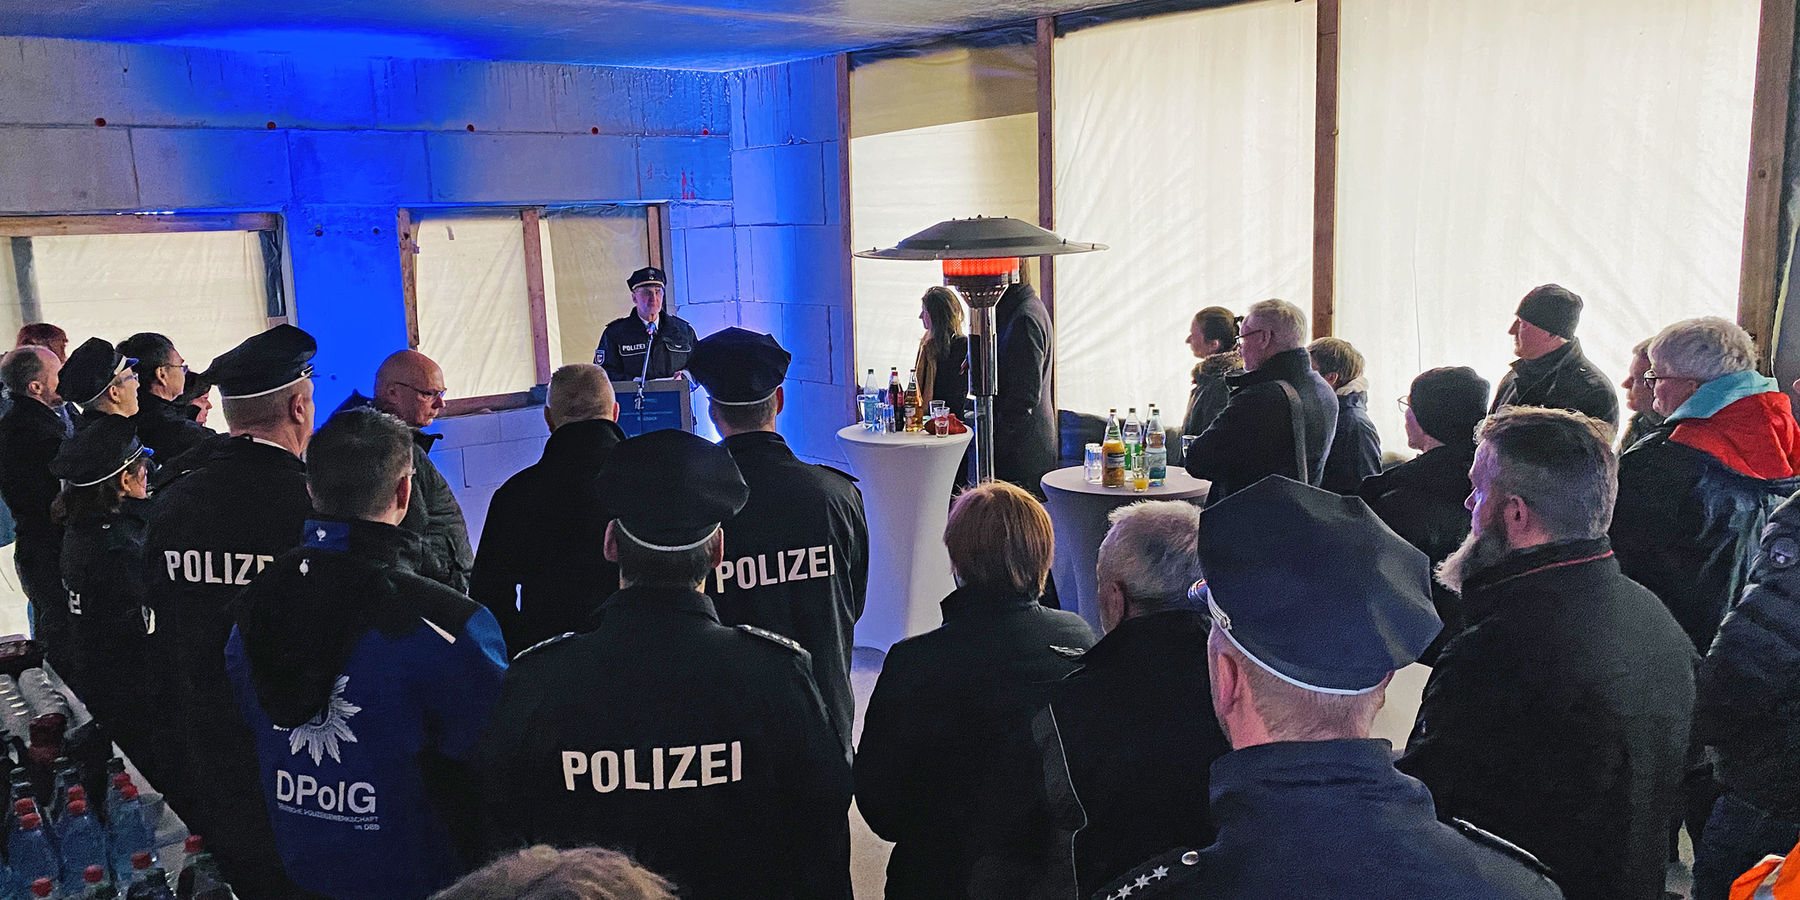 Thomas Dabel vom Polizeipräsidium Rostock richtet das Grußwort des Polizeipräsidenten Peter Mainka aus. © 2020 Christian Hoffmann, Finanzministerium Mecklenburg-Vorpommern